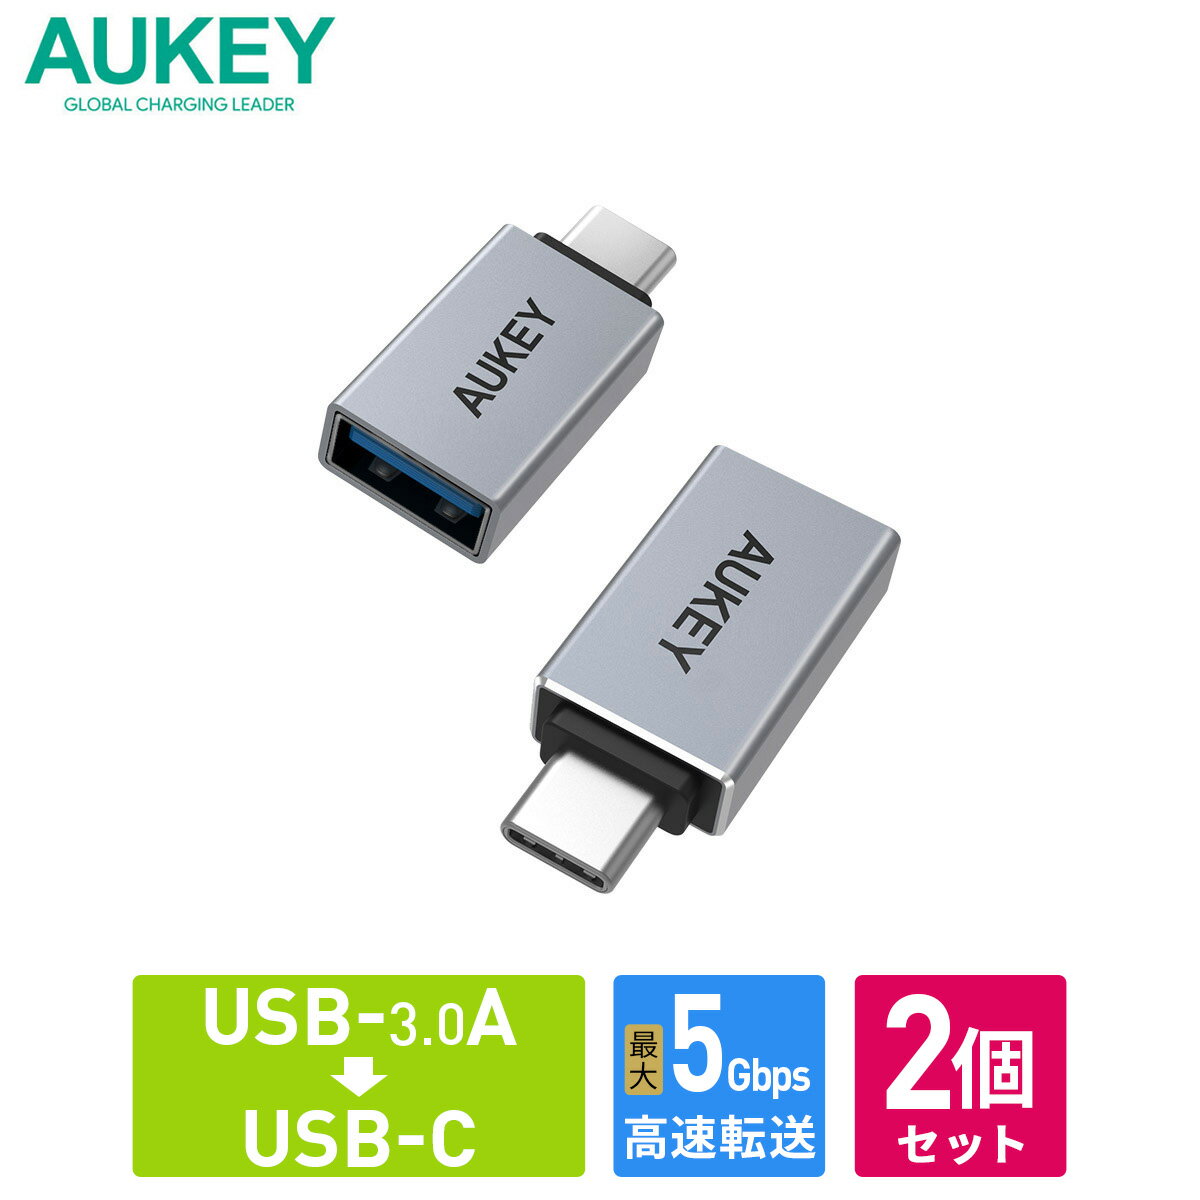 【2個セット】 USB変換アダプター AUKEY オーキー USB3.0 Type-A to C Unity Series CB-A22 アルミ素材 シルバー Type-C 変換コネクタ プラグ 変換 タイプC 充電 データ転送 USB-A USB-C 56kレジスタ 56kΩ抵抗 2年保証